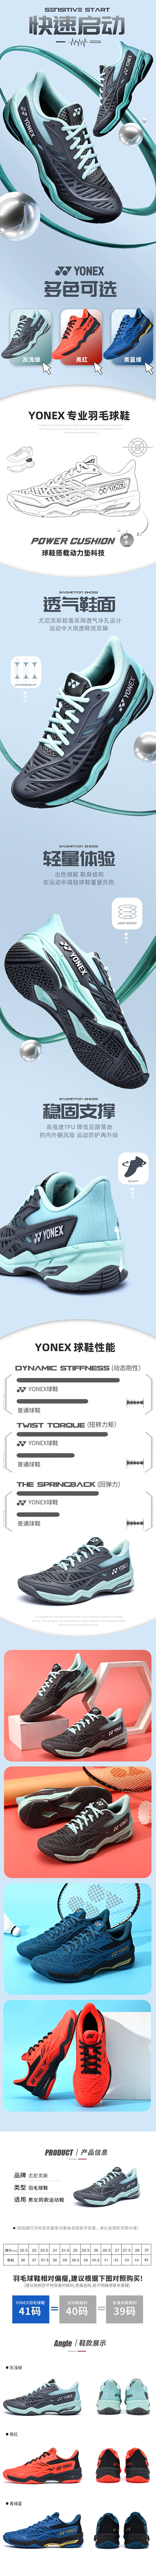 尤尼克斯-YONEX羽毛球鞋详情页面
（...